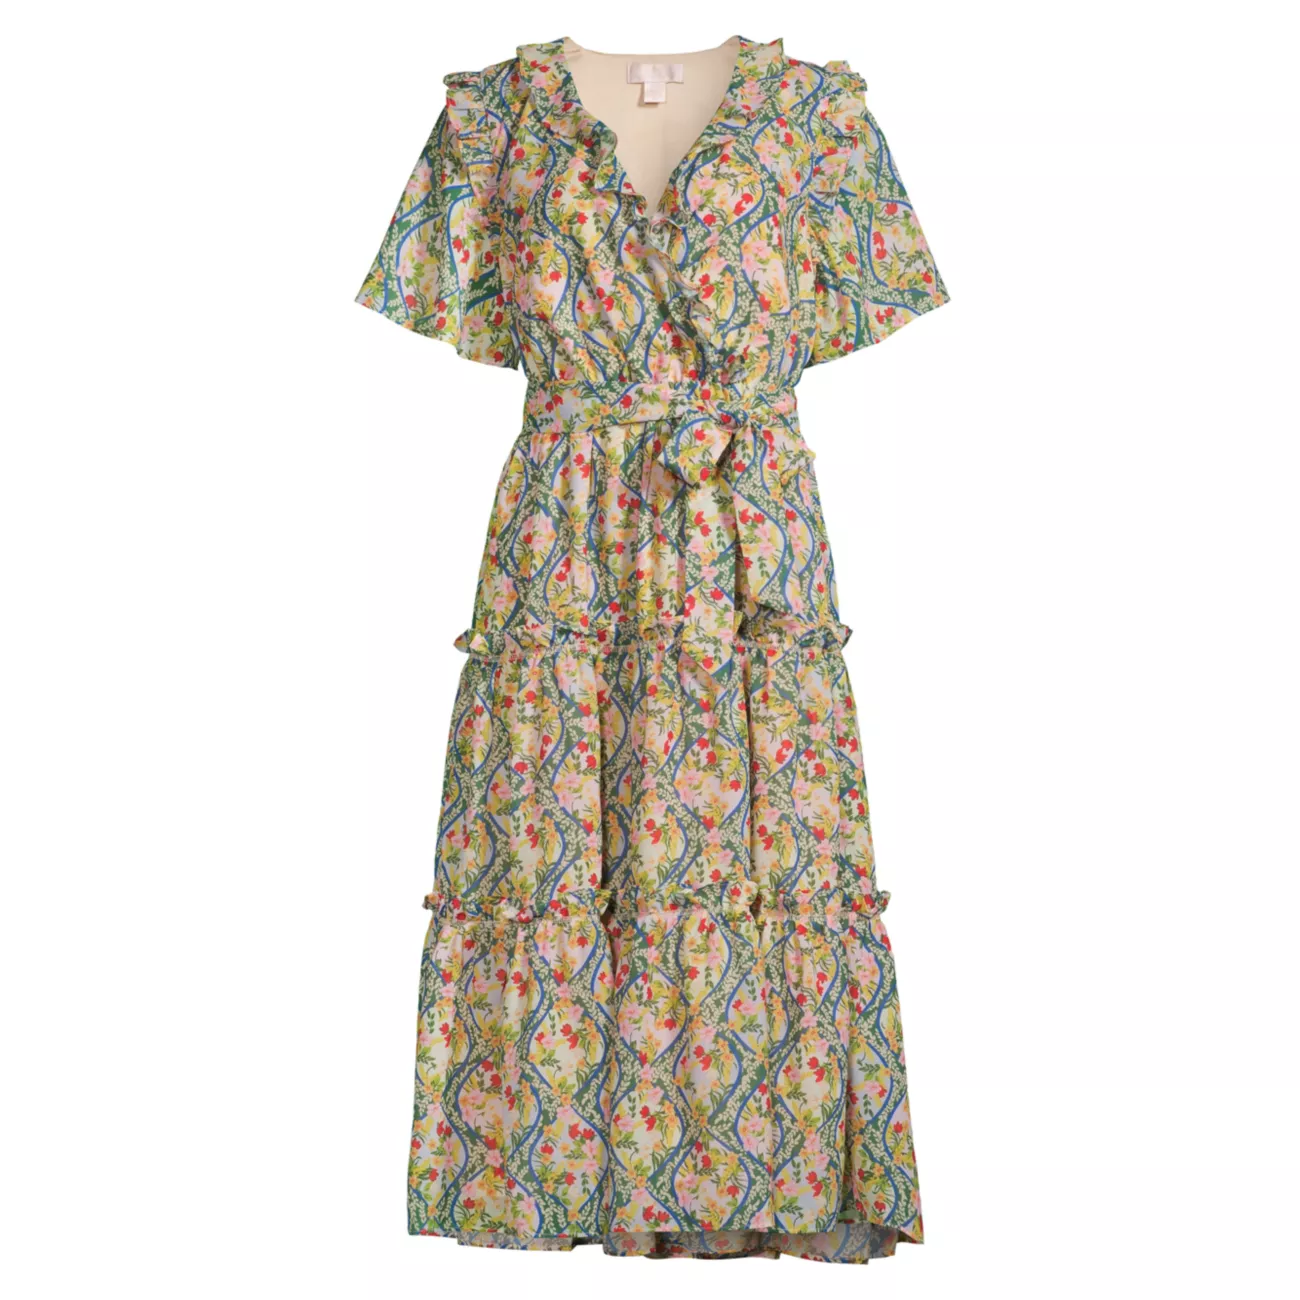 Шифоновое платье миди с цветочным принтом RACHEL PARCELL